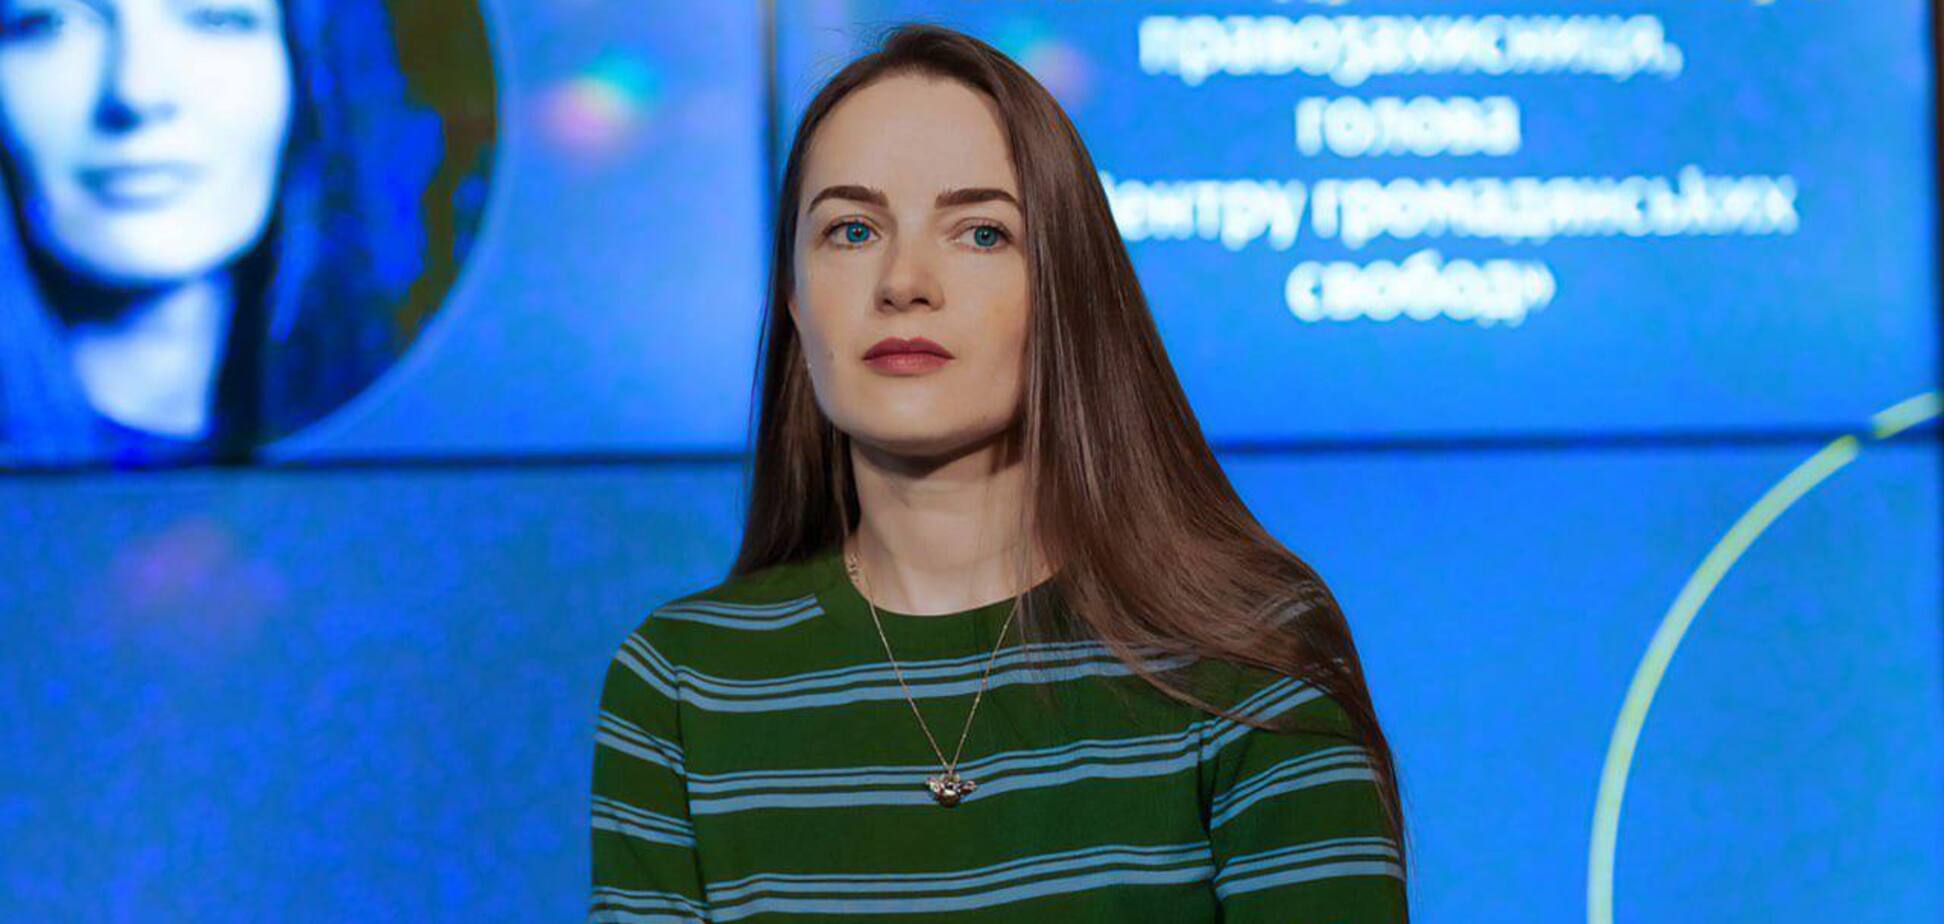 'Кожен має знати, що без їхніх зусиль нічого не зміниться': правозахисниця Олександра Матвійчук дала інтерв'ю для музею 'Голоси мирних' Фонду Ріната Ахметова